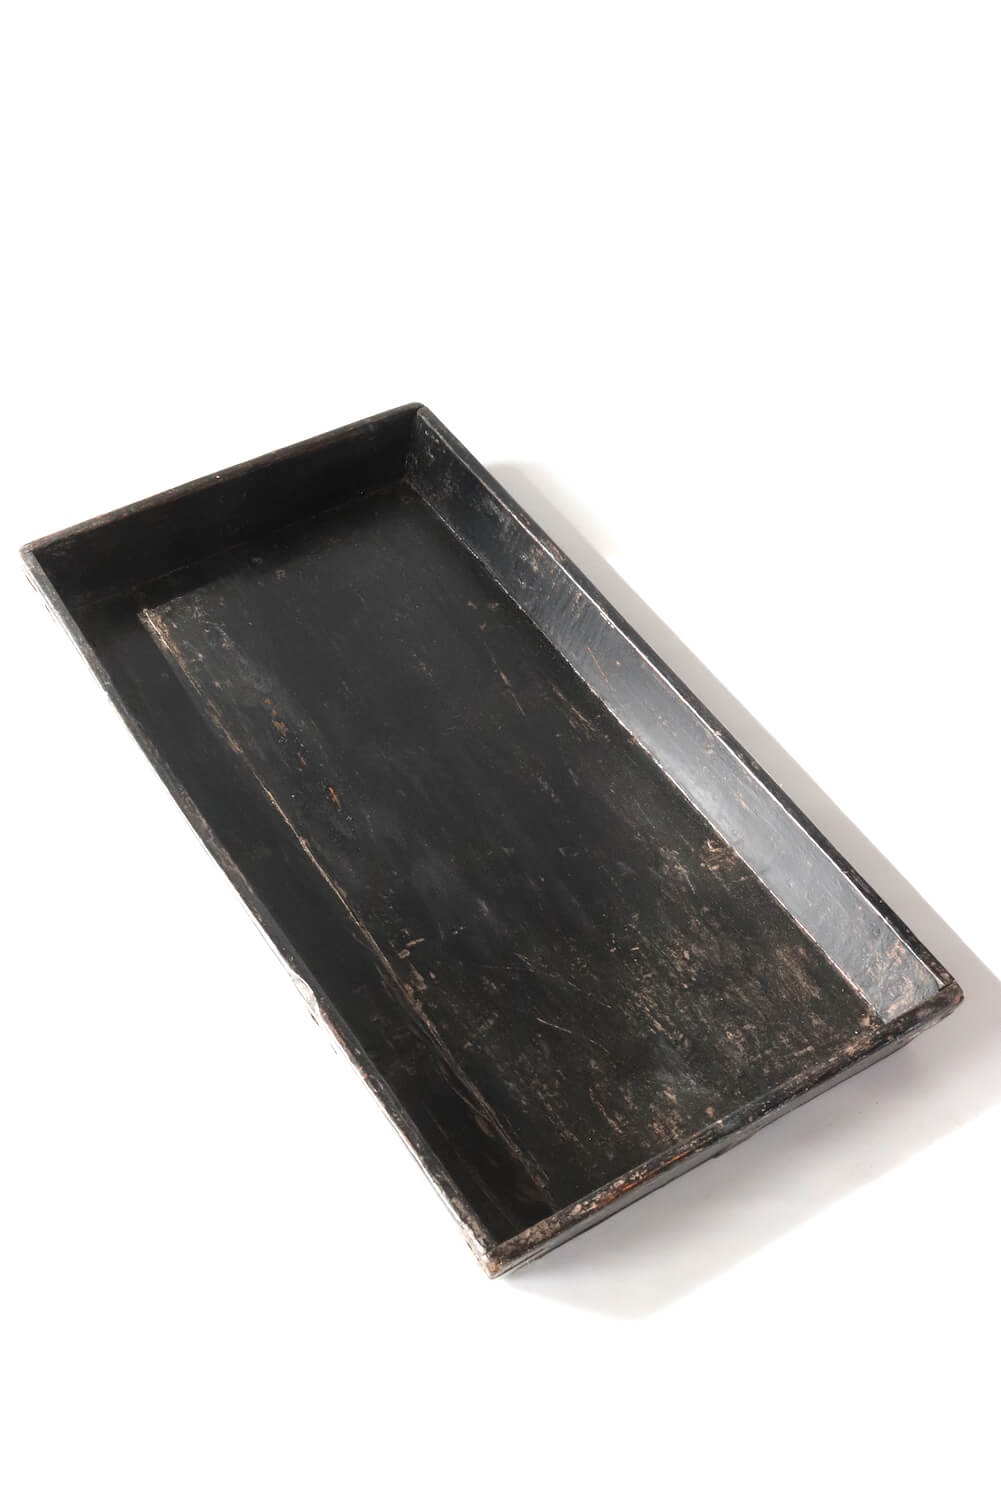 black wooden tray China